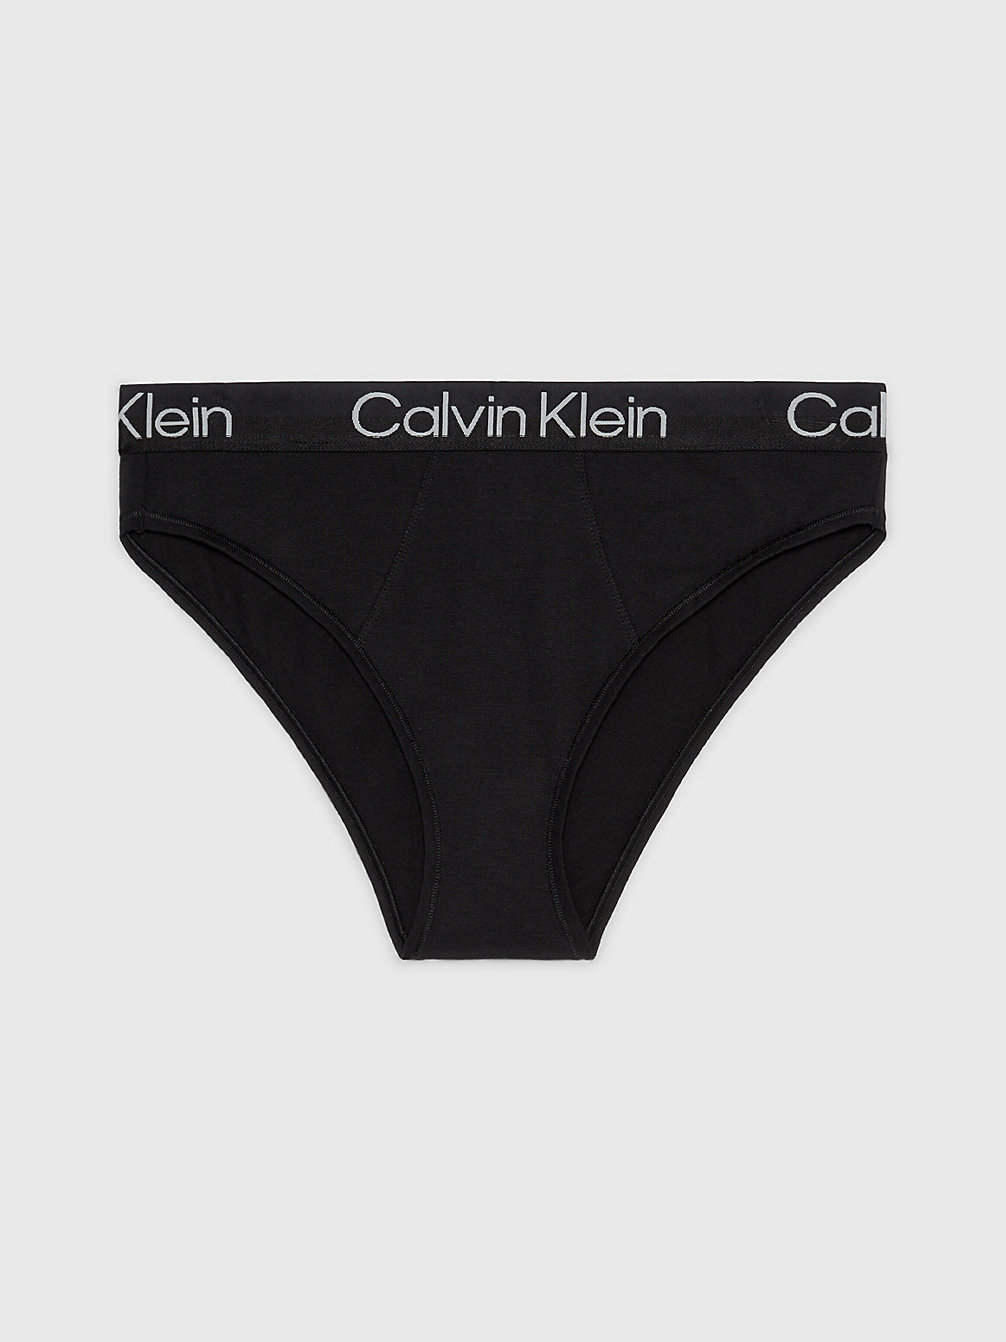 BLACK Brazilian Slip Mit Hohem Beinausschnitt - Modern Structure undefined Damen Calvin Klein